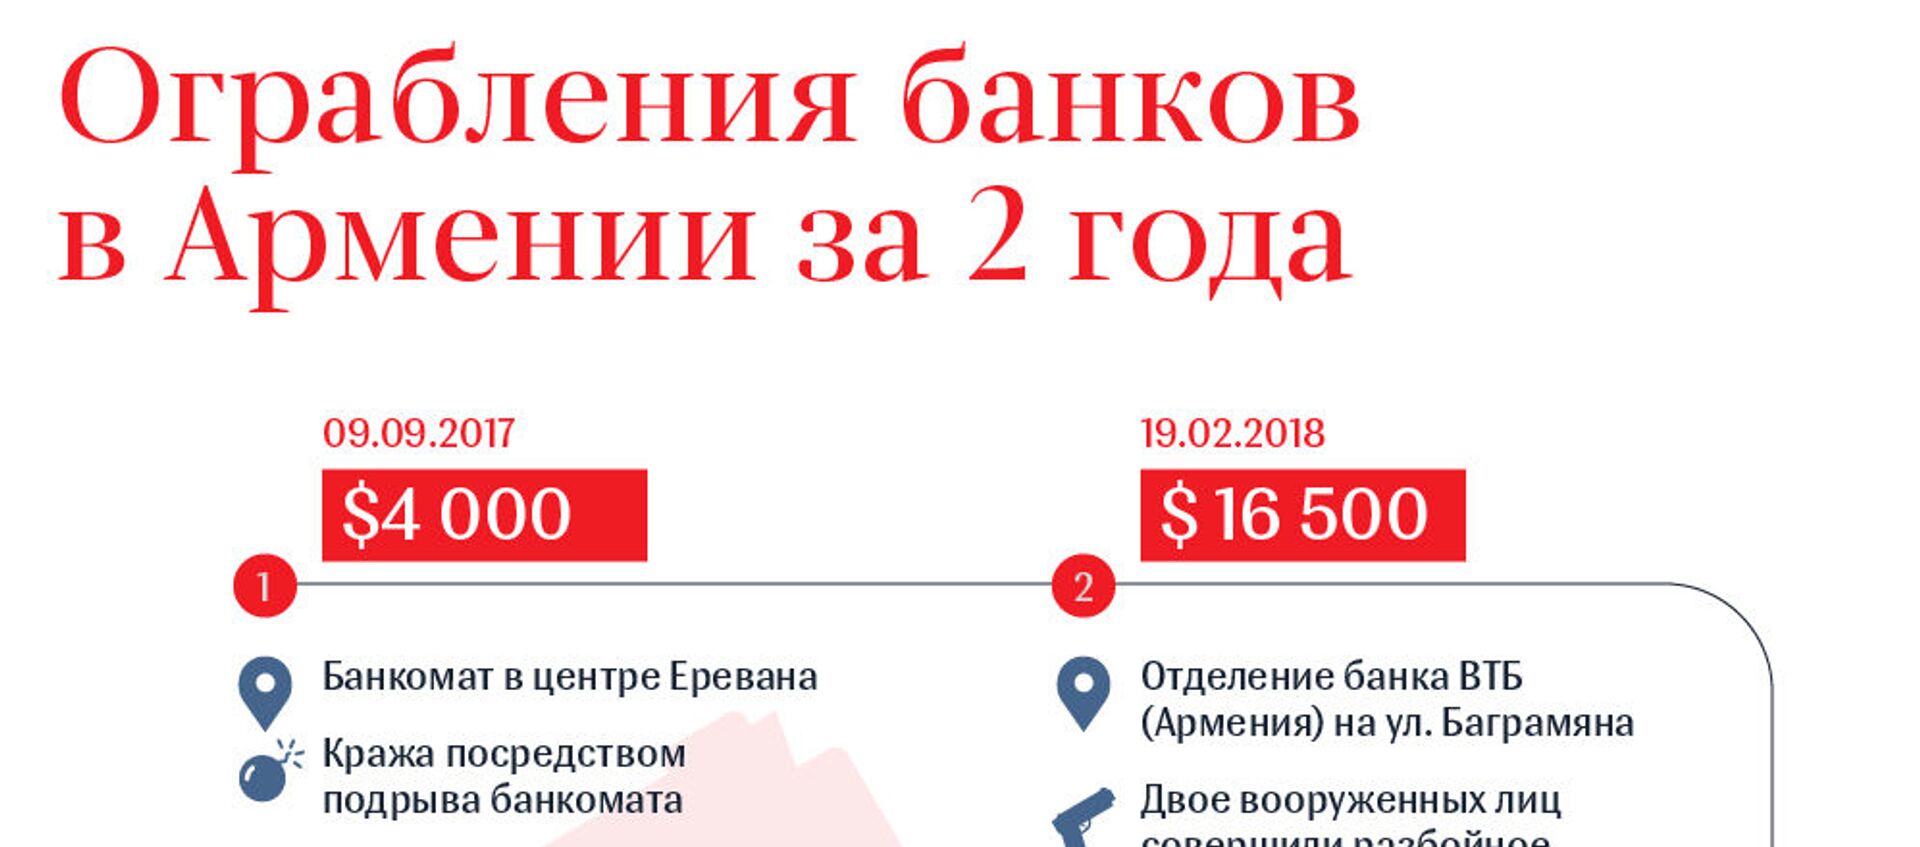 Ограбление банков в Армении за последние года - Sputnik Армения, 1920, 30.07.2019